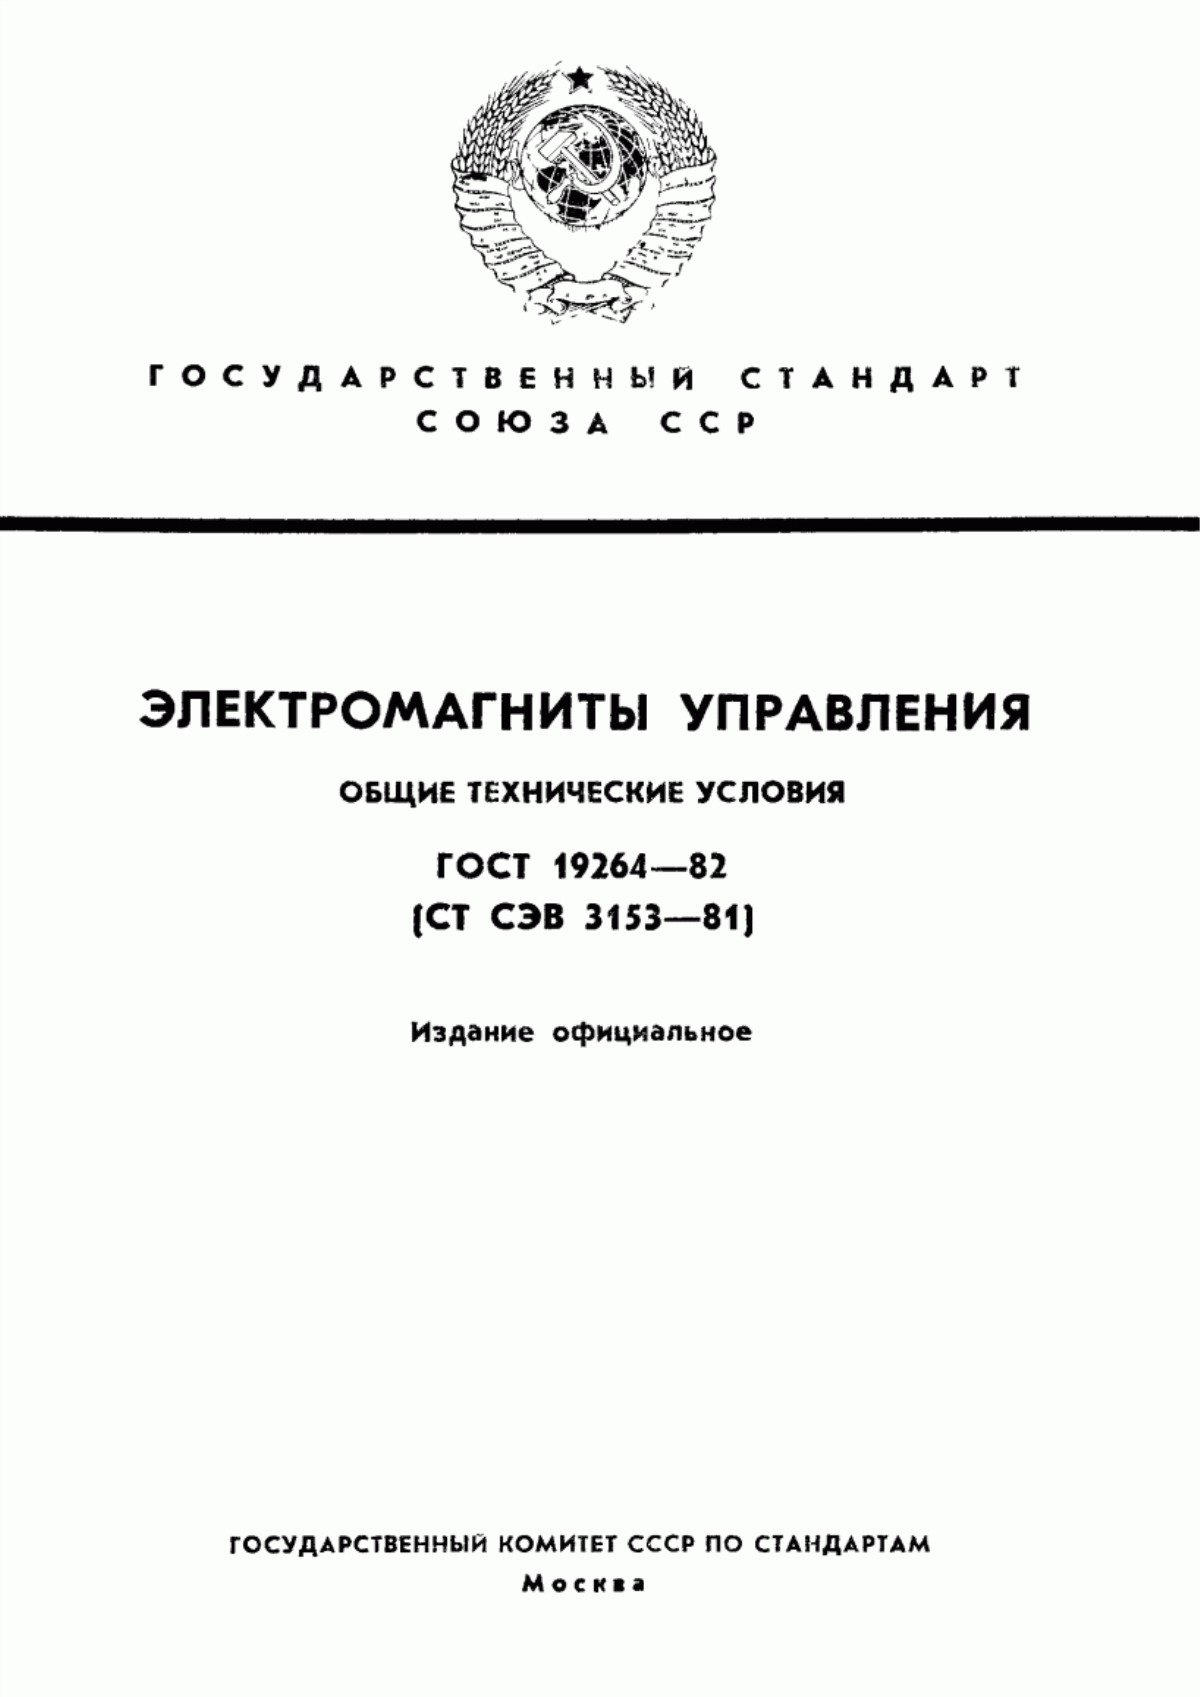 ГОСТ 19264-82 Электромагниты управления. Общие технические условия